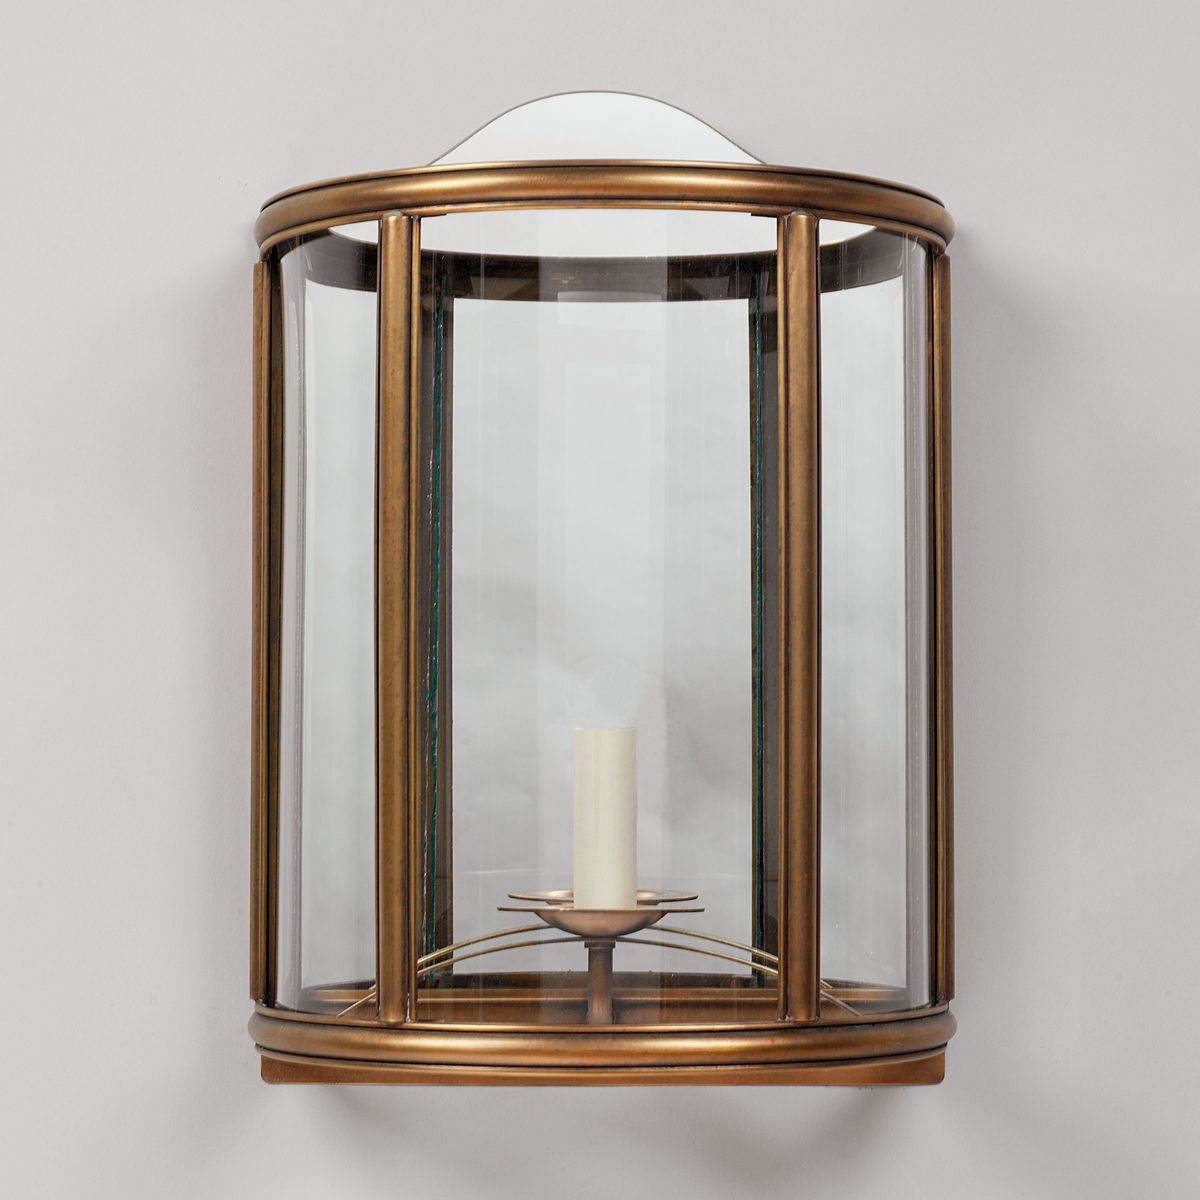 Grenelle Wall Light - Antique Brass | Nicholas Engert Interiors